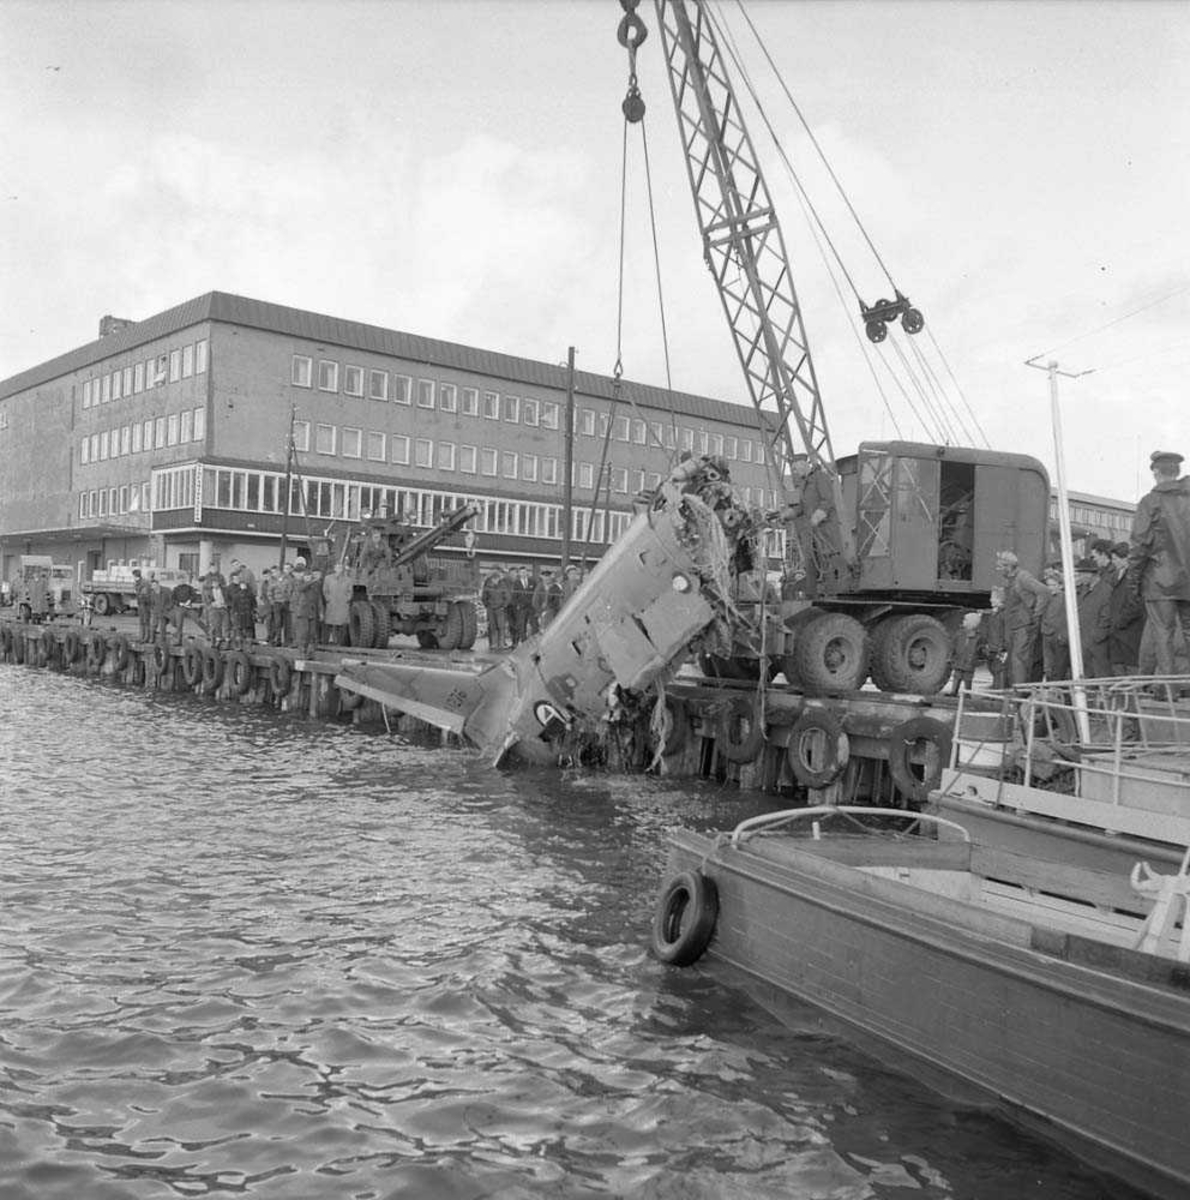 F-86-K Sabre er hevet fra havets bunn og slept inn til havnen i Bodø, av fartøyet N-510-ME. Flyvraket ble så kjørt til Bodø flystasjon.